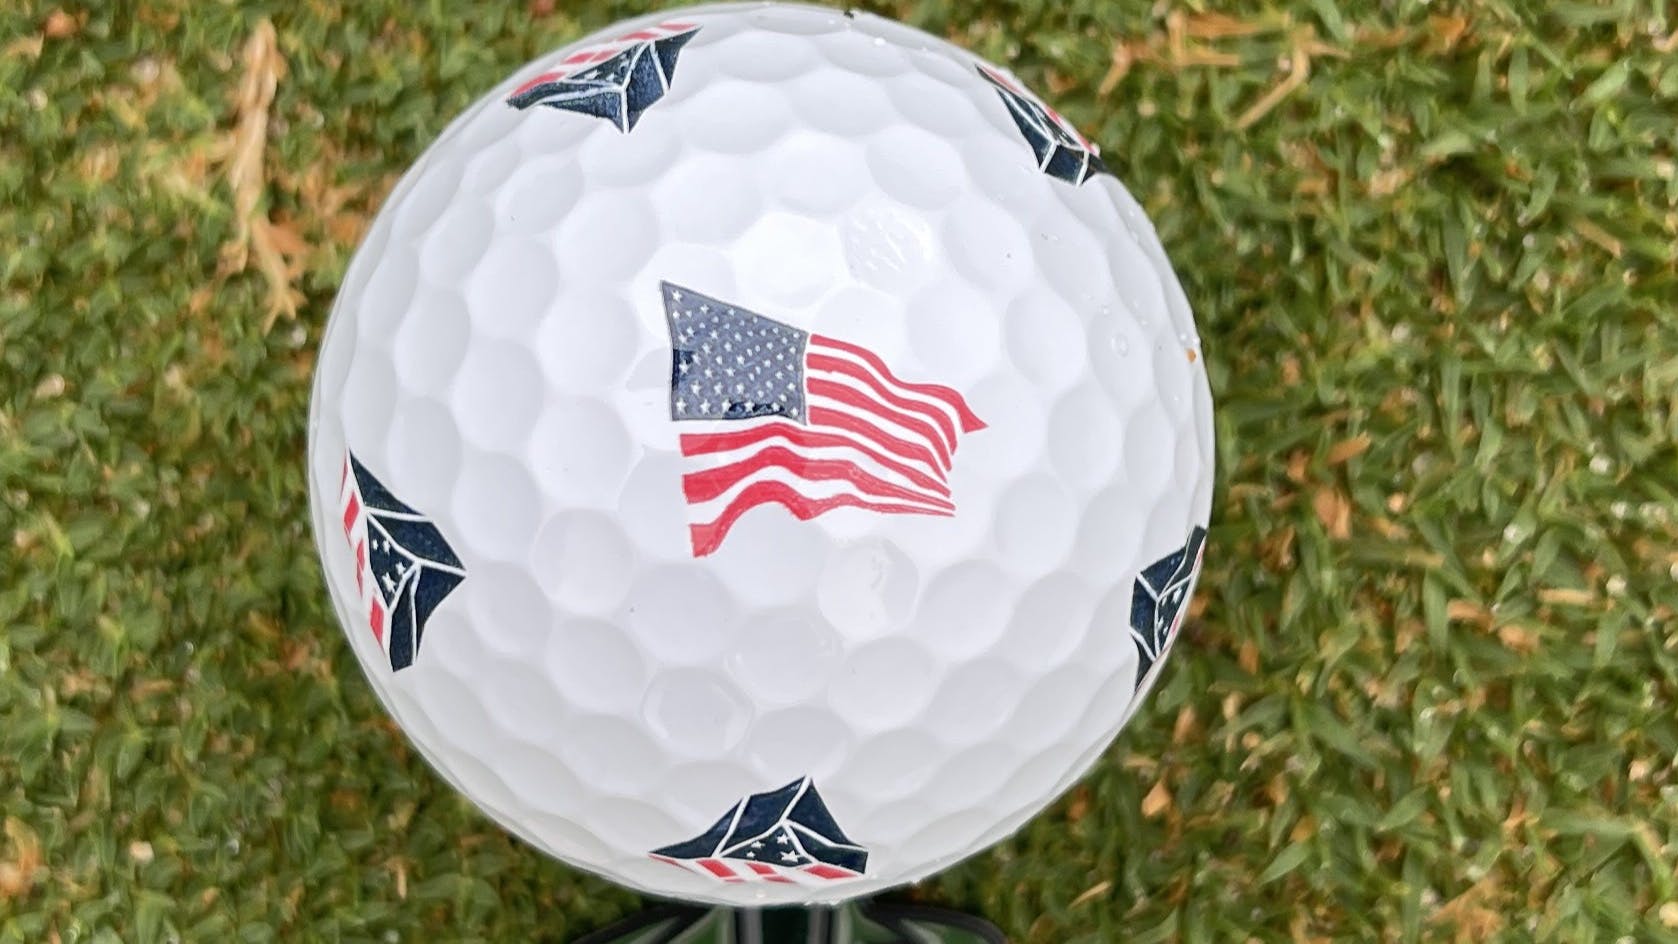 The TaylorMade TP5x Pix USA Golf Ball.